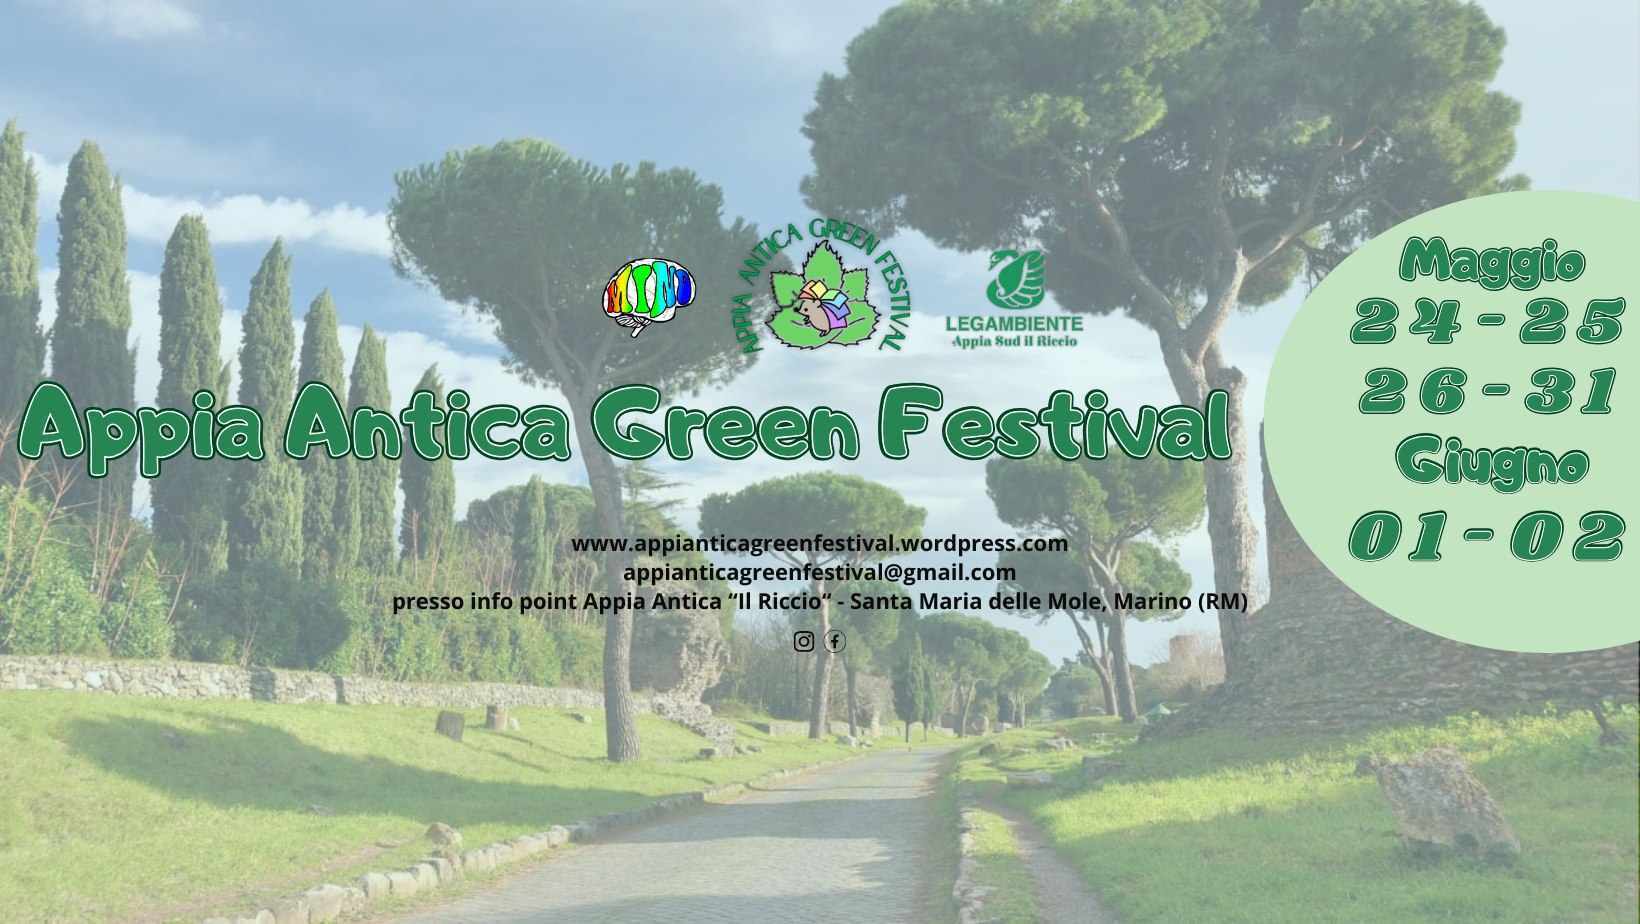 Appia Antica Green Festival: dal 24 maggio al 2 giugno a Santa Maria delle Mole (Marino)